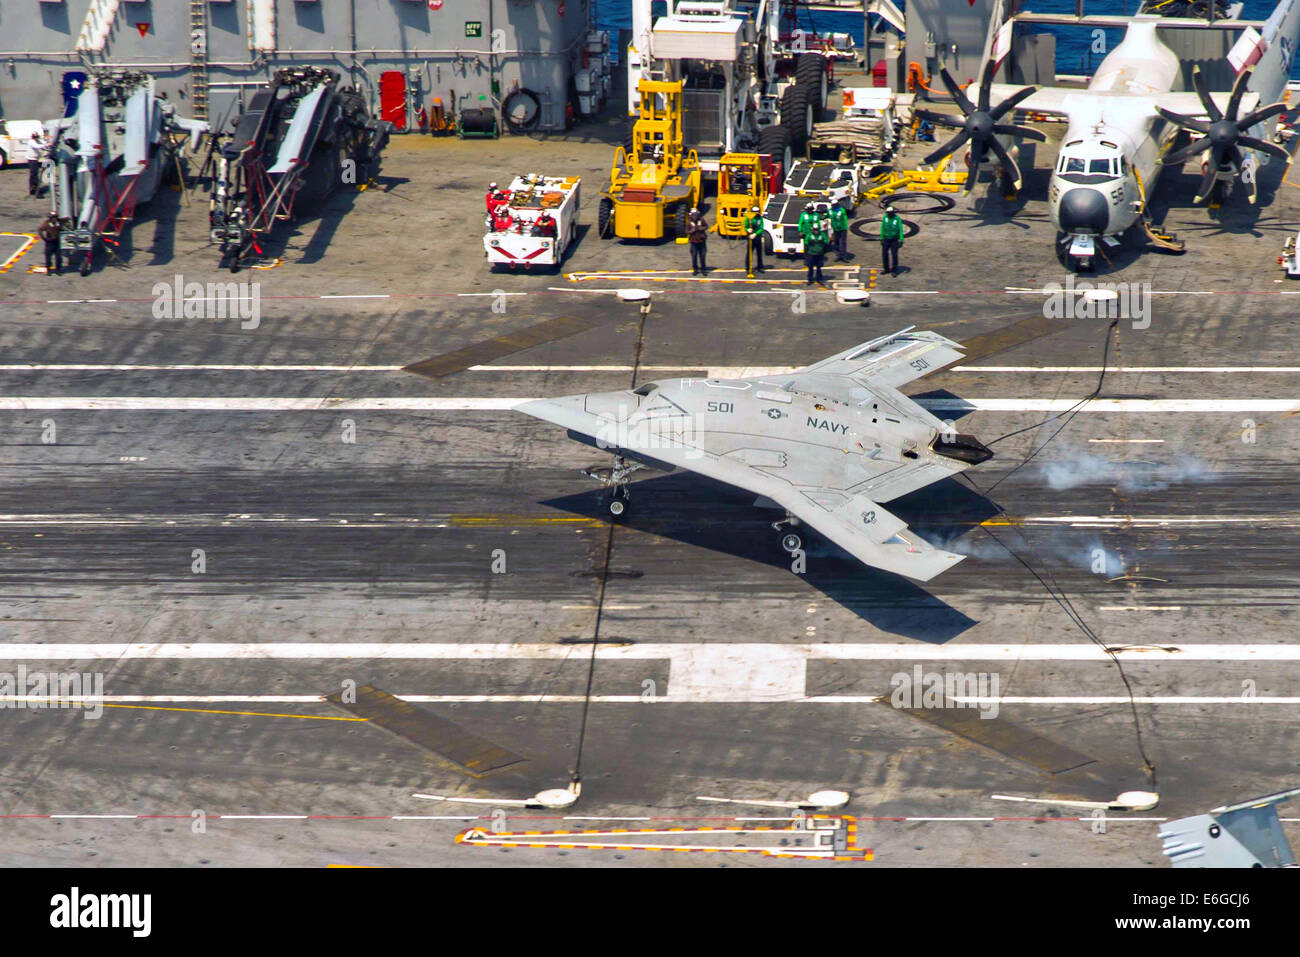 Die US Navy X-47 b autonomen stealth unbemannten eine verhaftete Landung auf dem Flugdeck des Flugzeugträgers USS Theodore Roosevelt während Tests demonstriert die Fähigkeit führt, sicher und nahtlos mit bemannten Luftfahrzeugen 17. August 2014 in den Atlantischen Ozean zu betreiben. Stockfoto